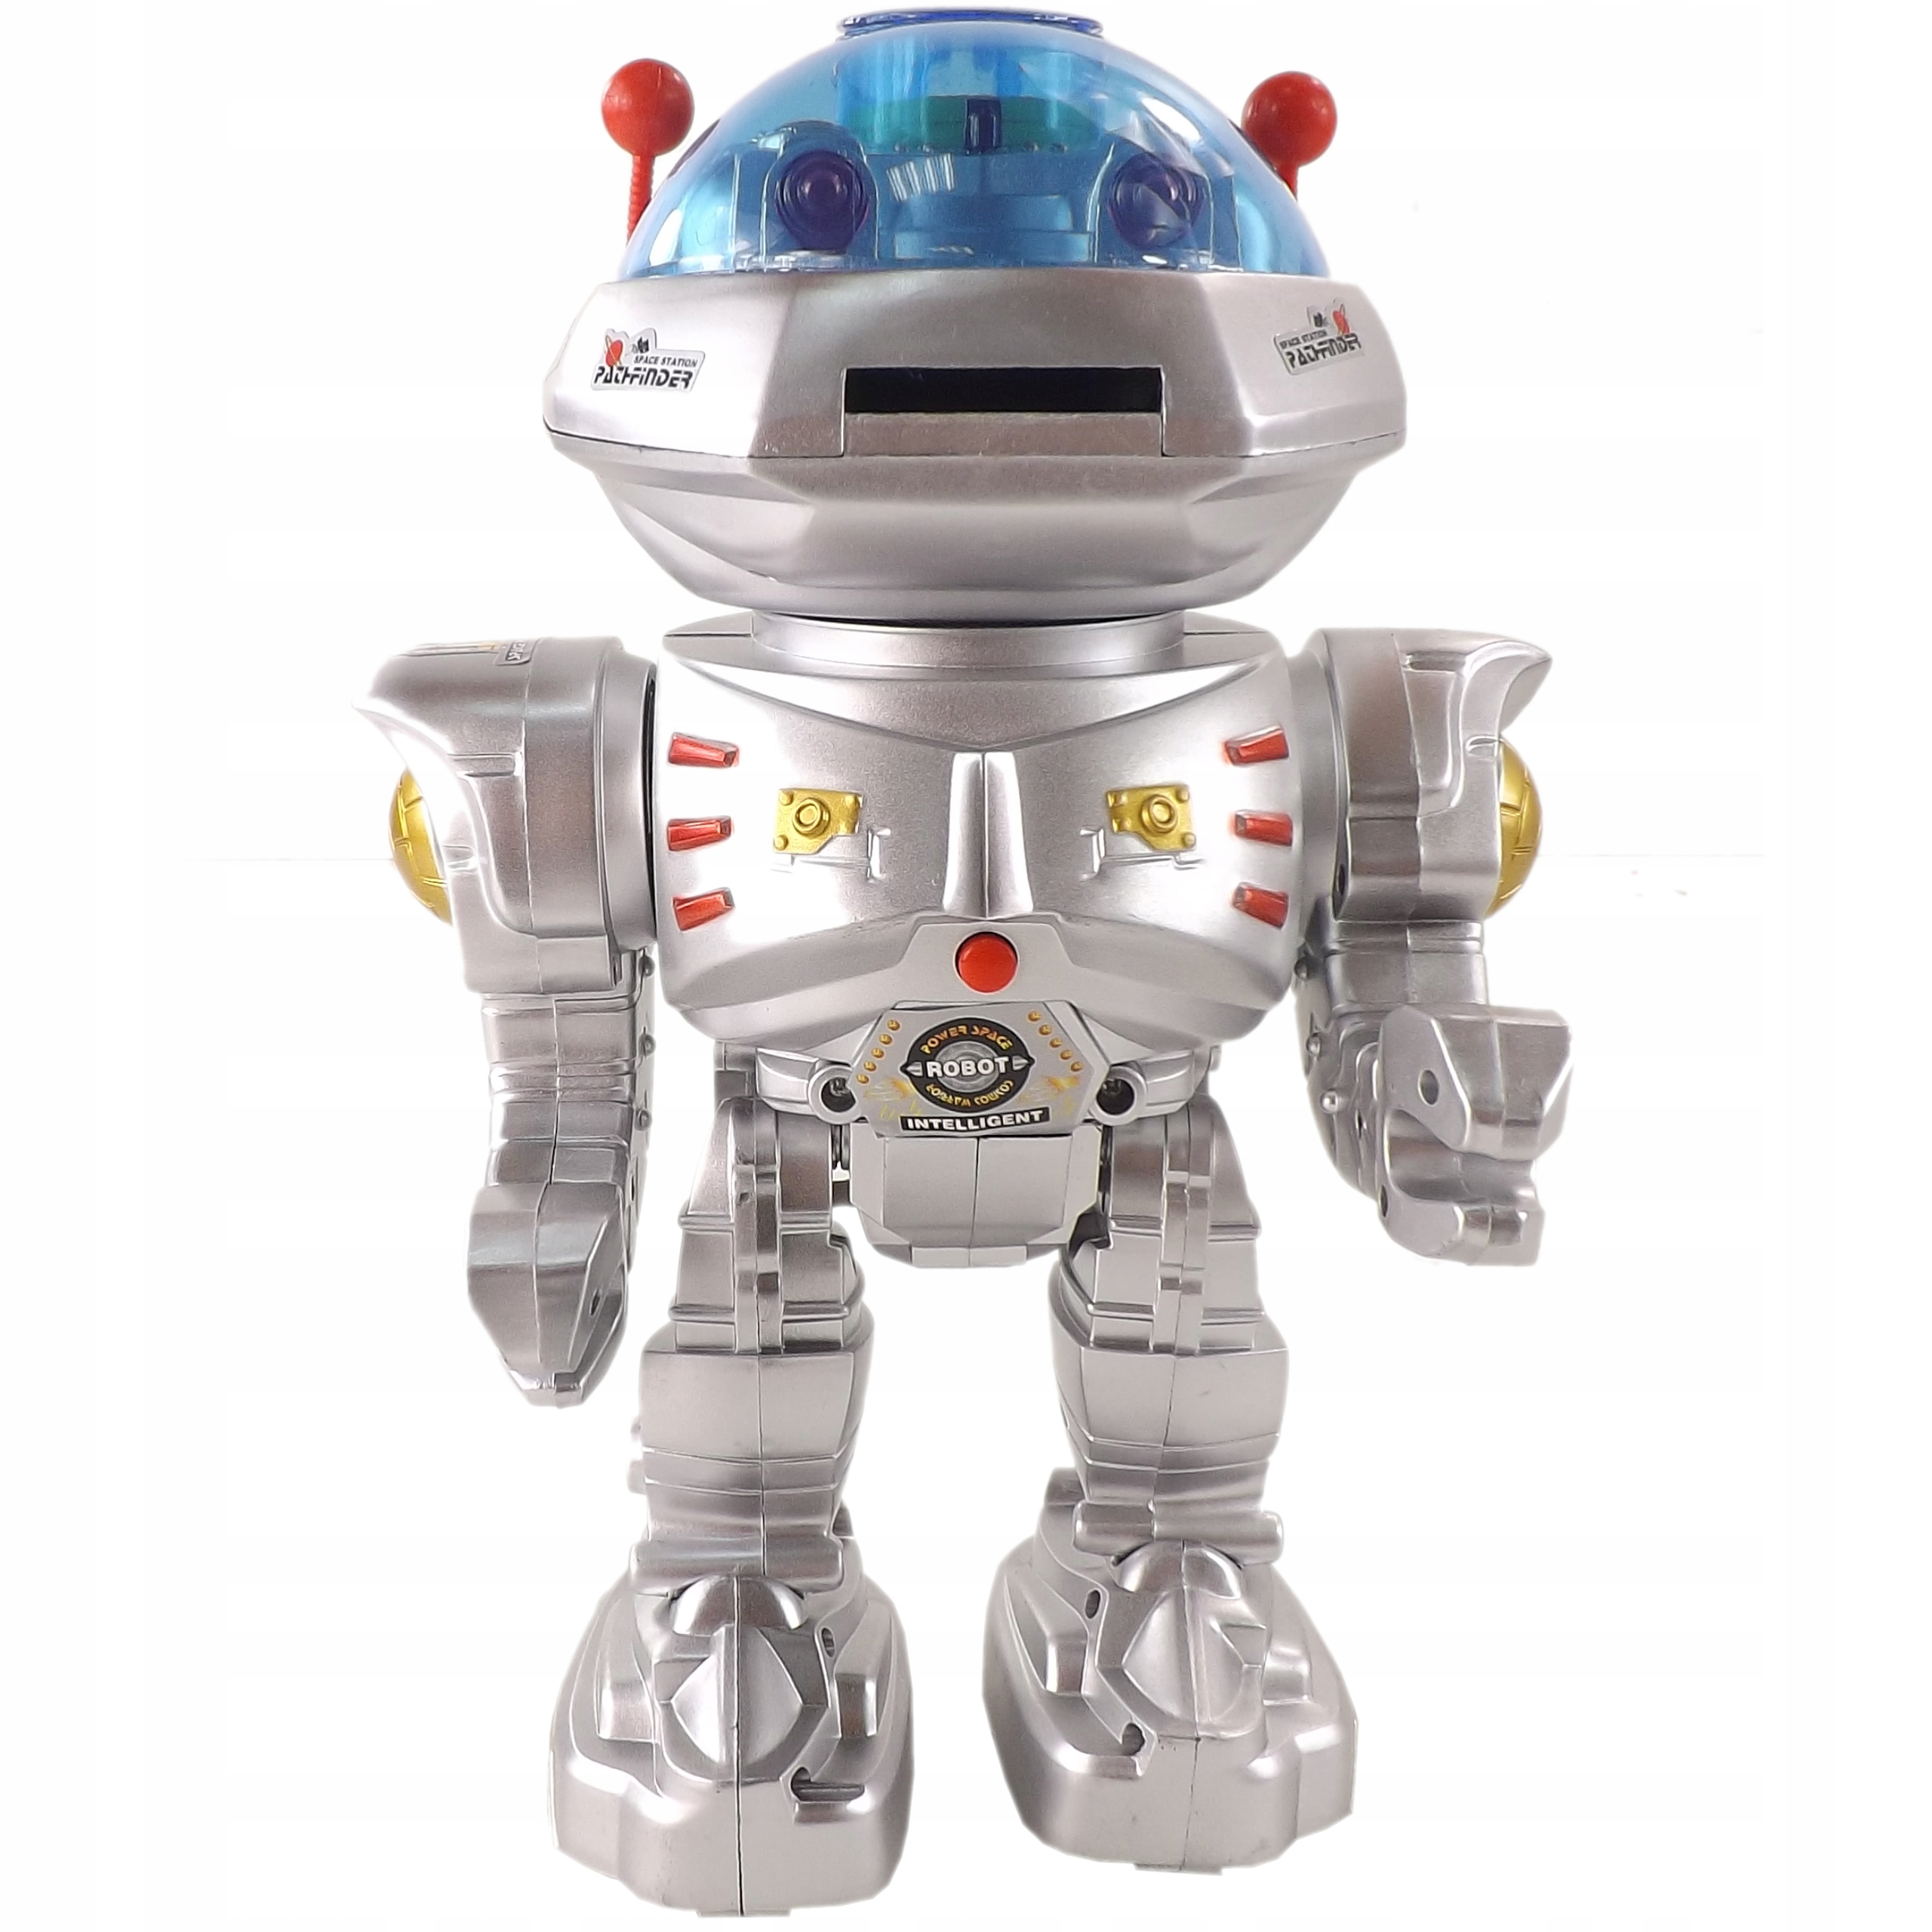 Zabawka Robot Zdalnie Sterowany Strzelający 28072 Wiek dziecka 3 lata +